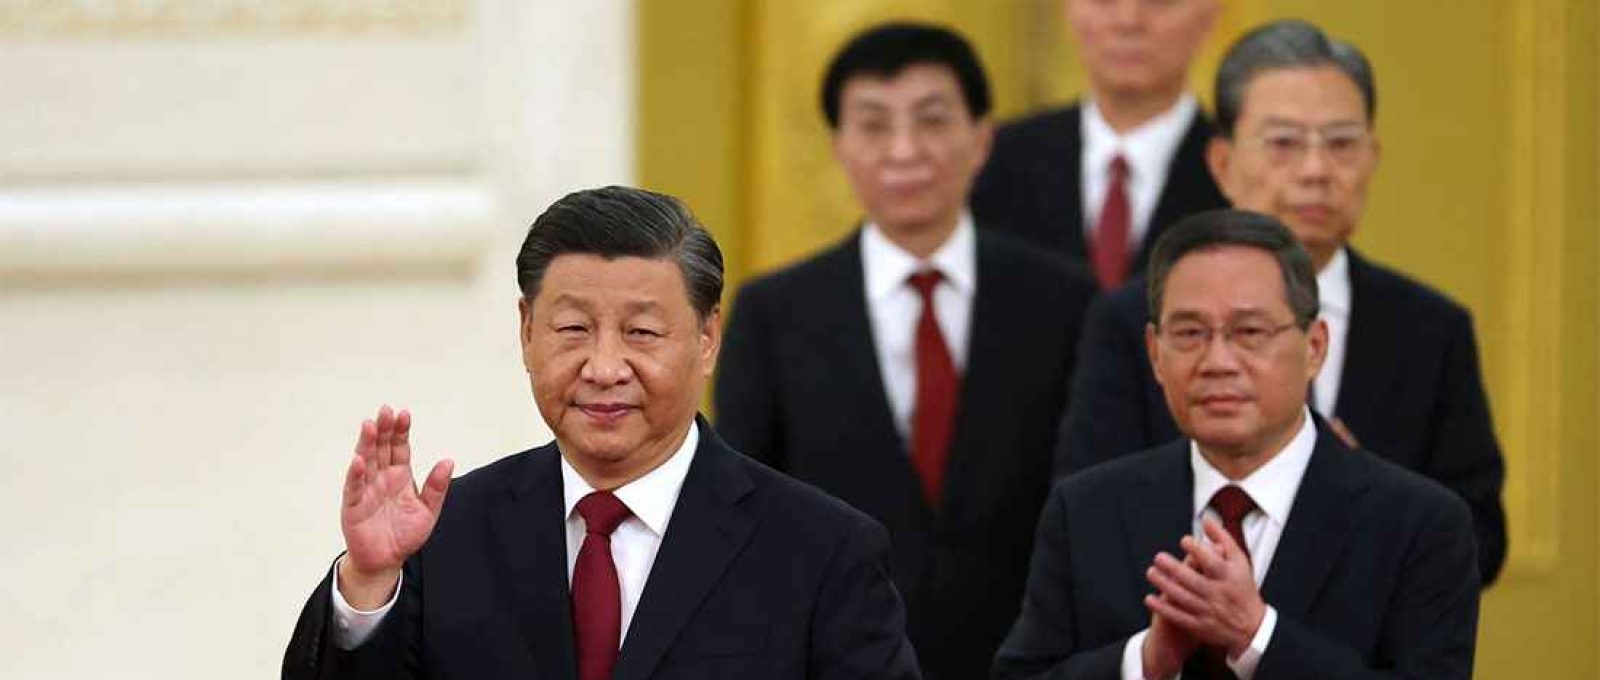 O presidente chinês Xi Jinping participa da reunião entre membros do comitê permanente do Birô Político do 20º Comitê Central do PCC e jornalistas chineses e estrangeiros no Grande Salão do Povo em 23 de outubro de 2022 em Pequim, China (Lintao Zhang/Getty Images).